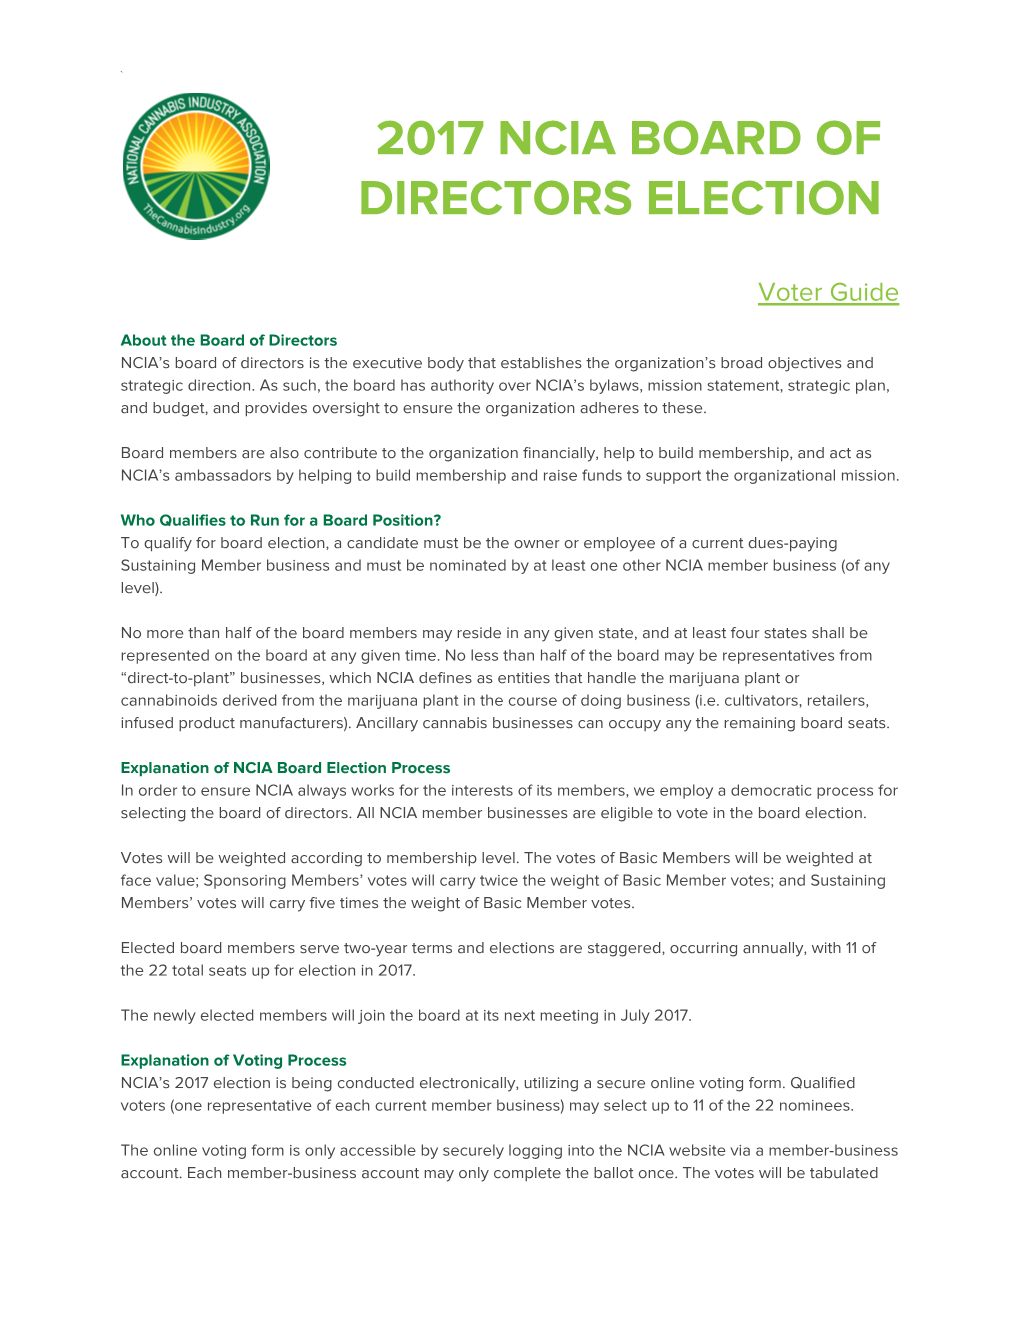 2017 Ncia Board of Directors Election